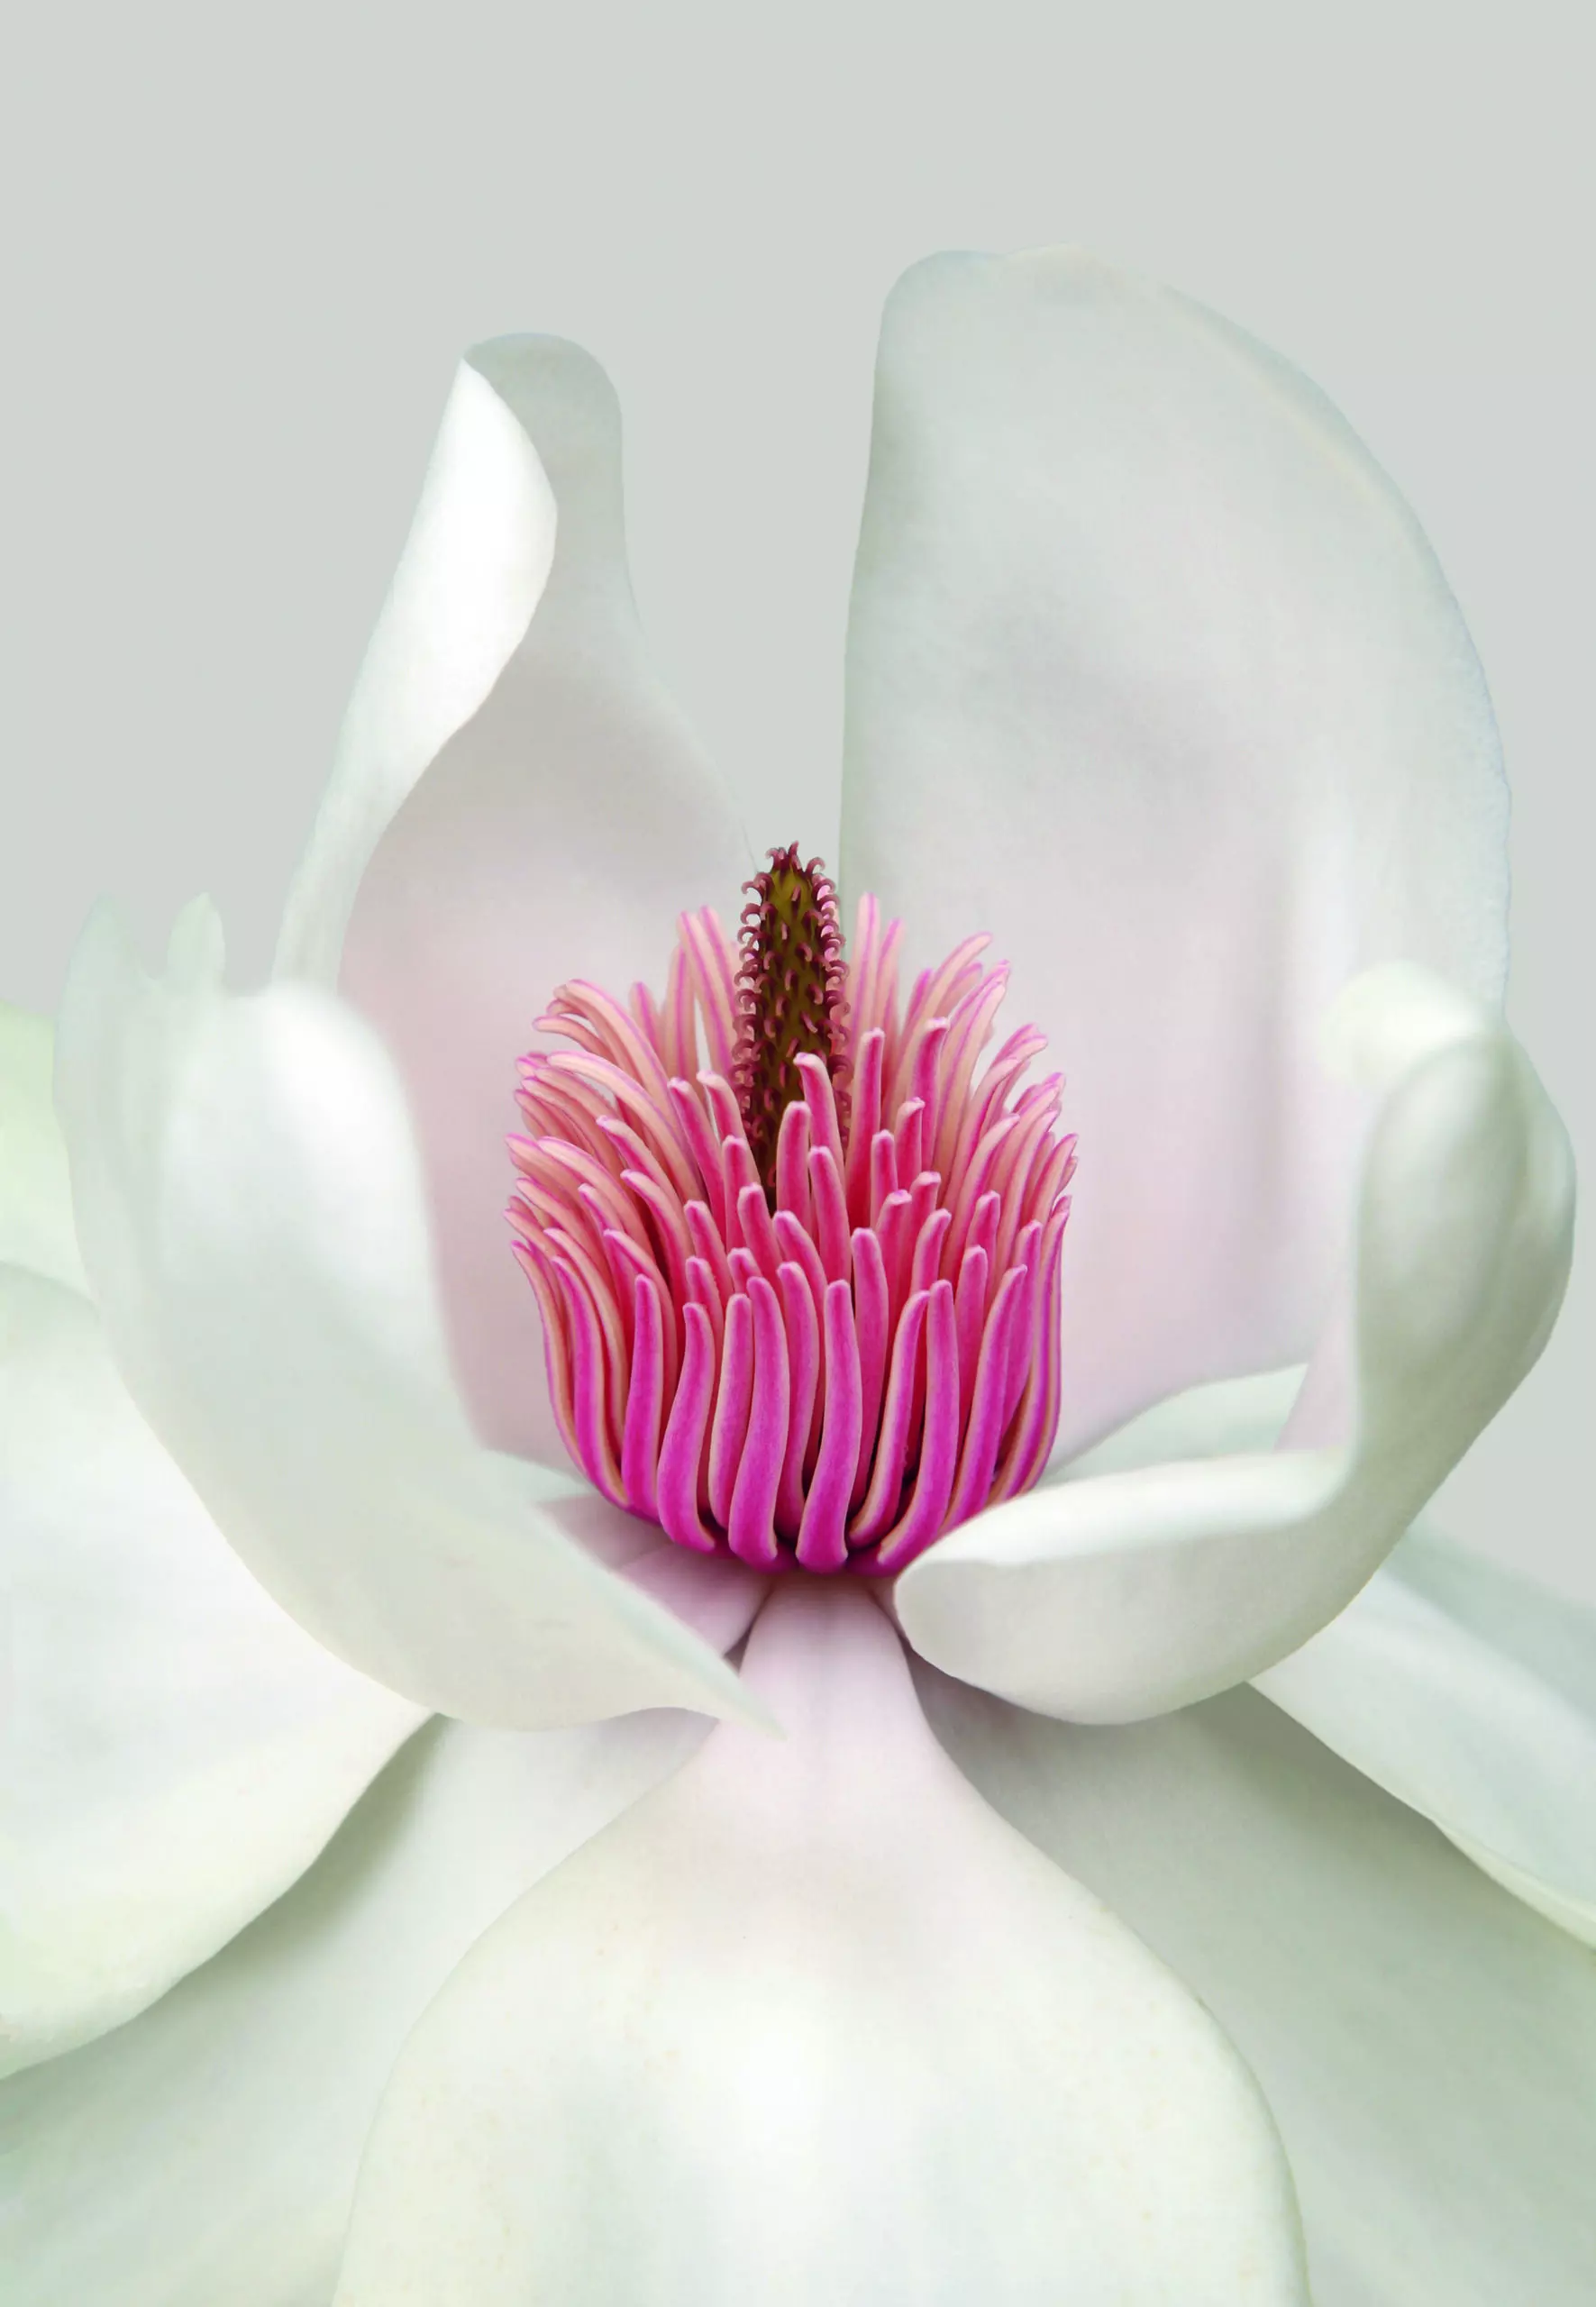 Wandbild (4768) Magnolia präsentiert: Details und Strukturen,Zen & Wellness,Natur,Blätter,Blumen und Blüten,Makro,Floral,Pflanzen